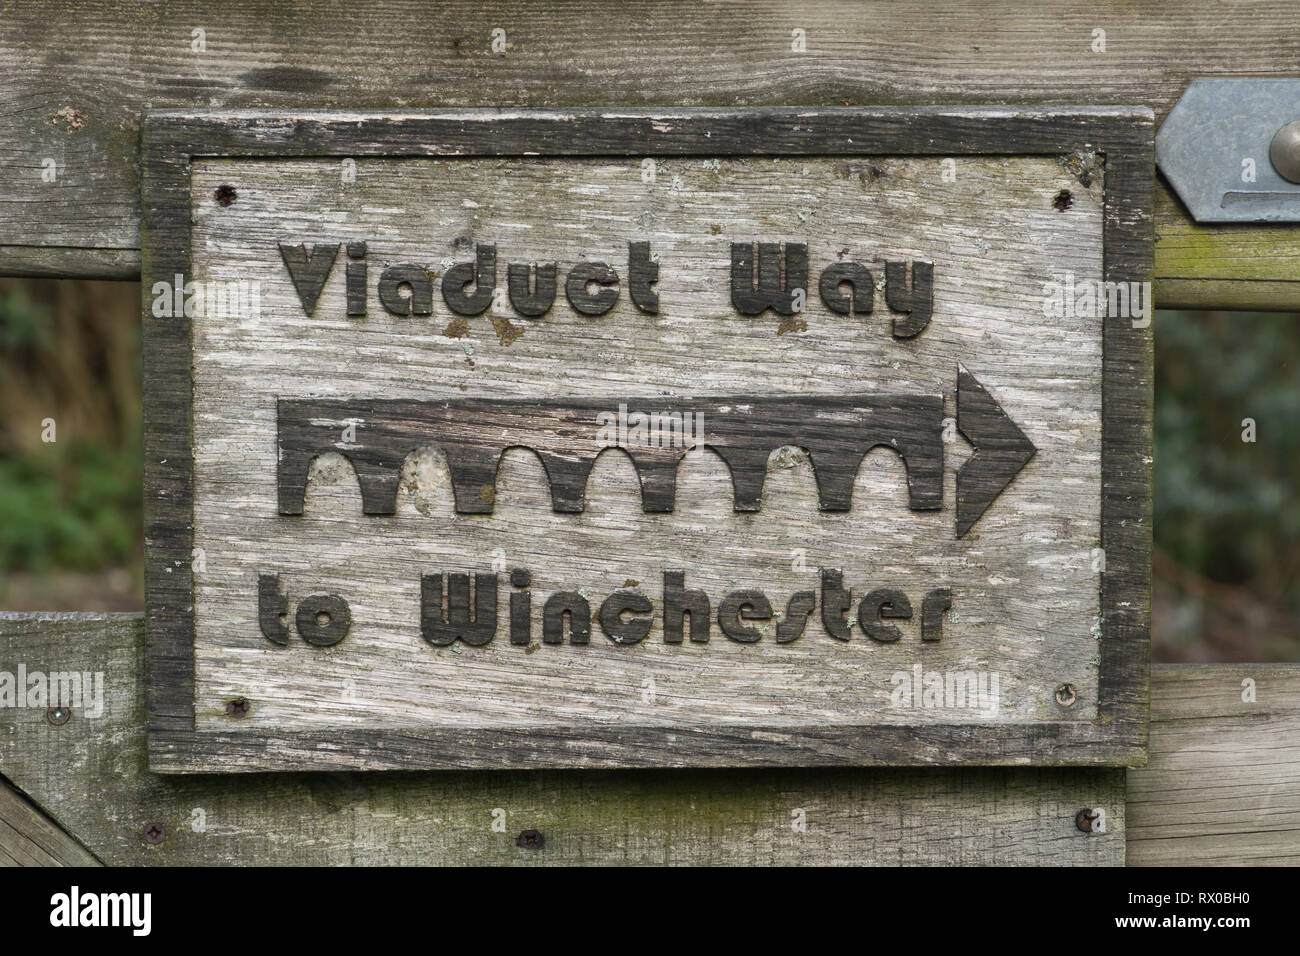 Señal que apunta al Viaducto forma sendero y Hockley viaducto, también forma parte del ciclo nacional de red de la Ruta 23, cerca de Winchester, Hampshire, Reino Unido Foto de stock